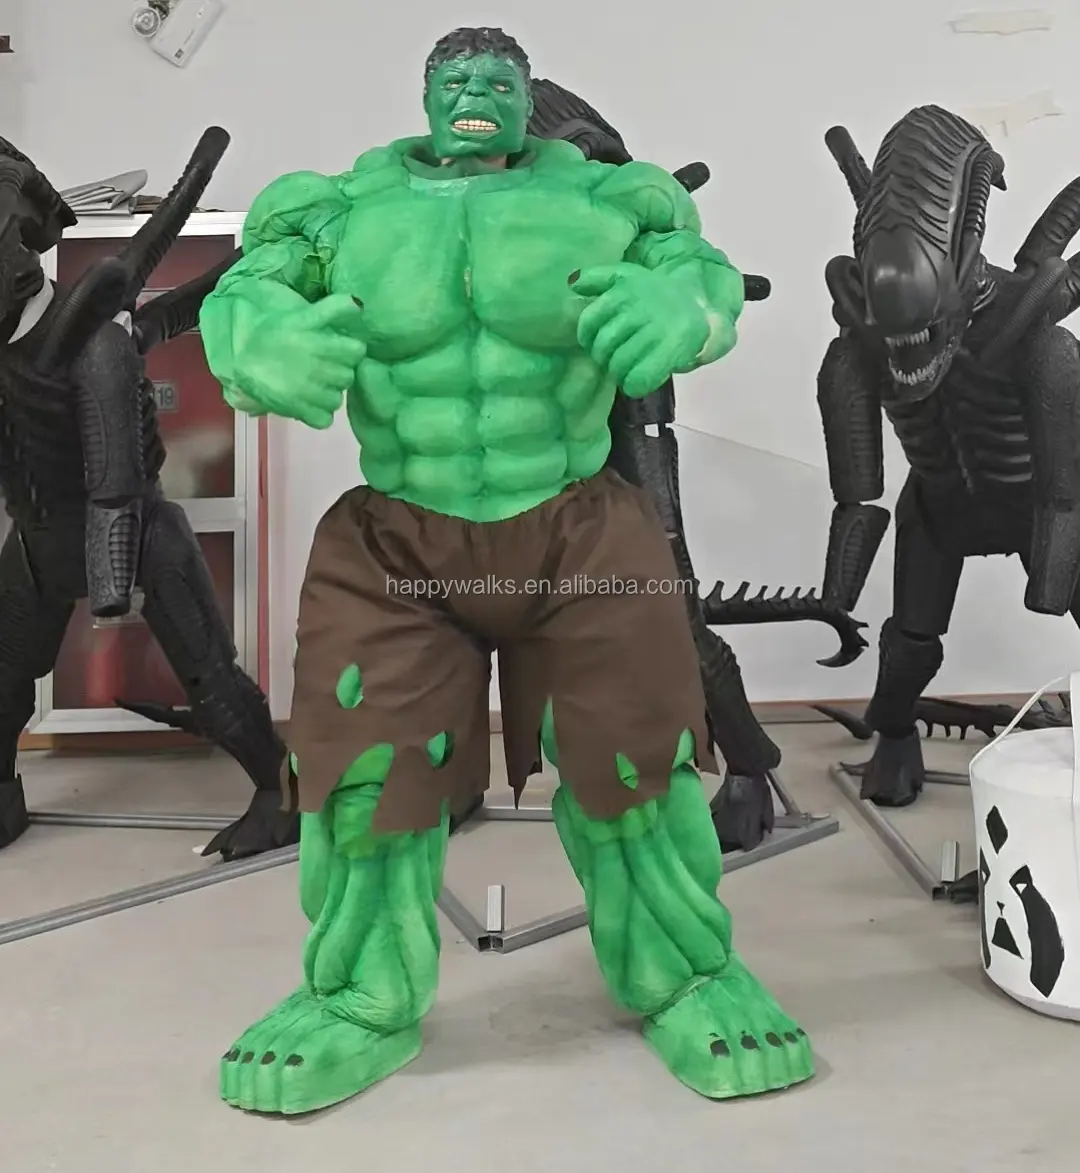 Disfraz de la mascota de Hulk, disfraz de Robot portátil, actuación, parque temático, trajes de fiesta transformables